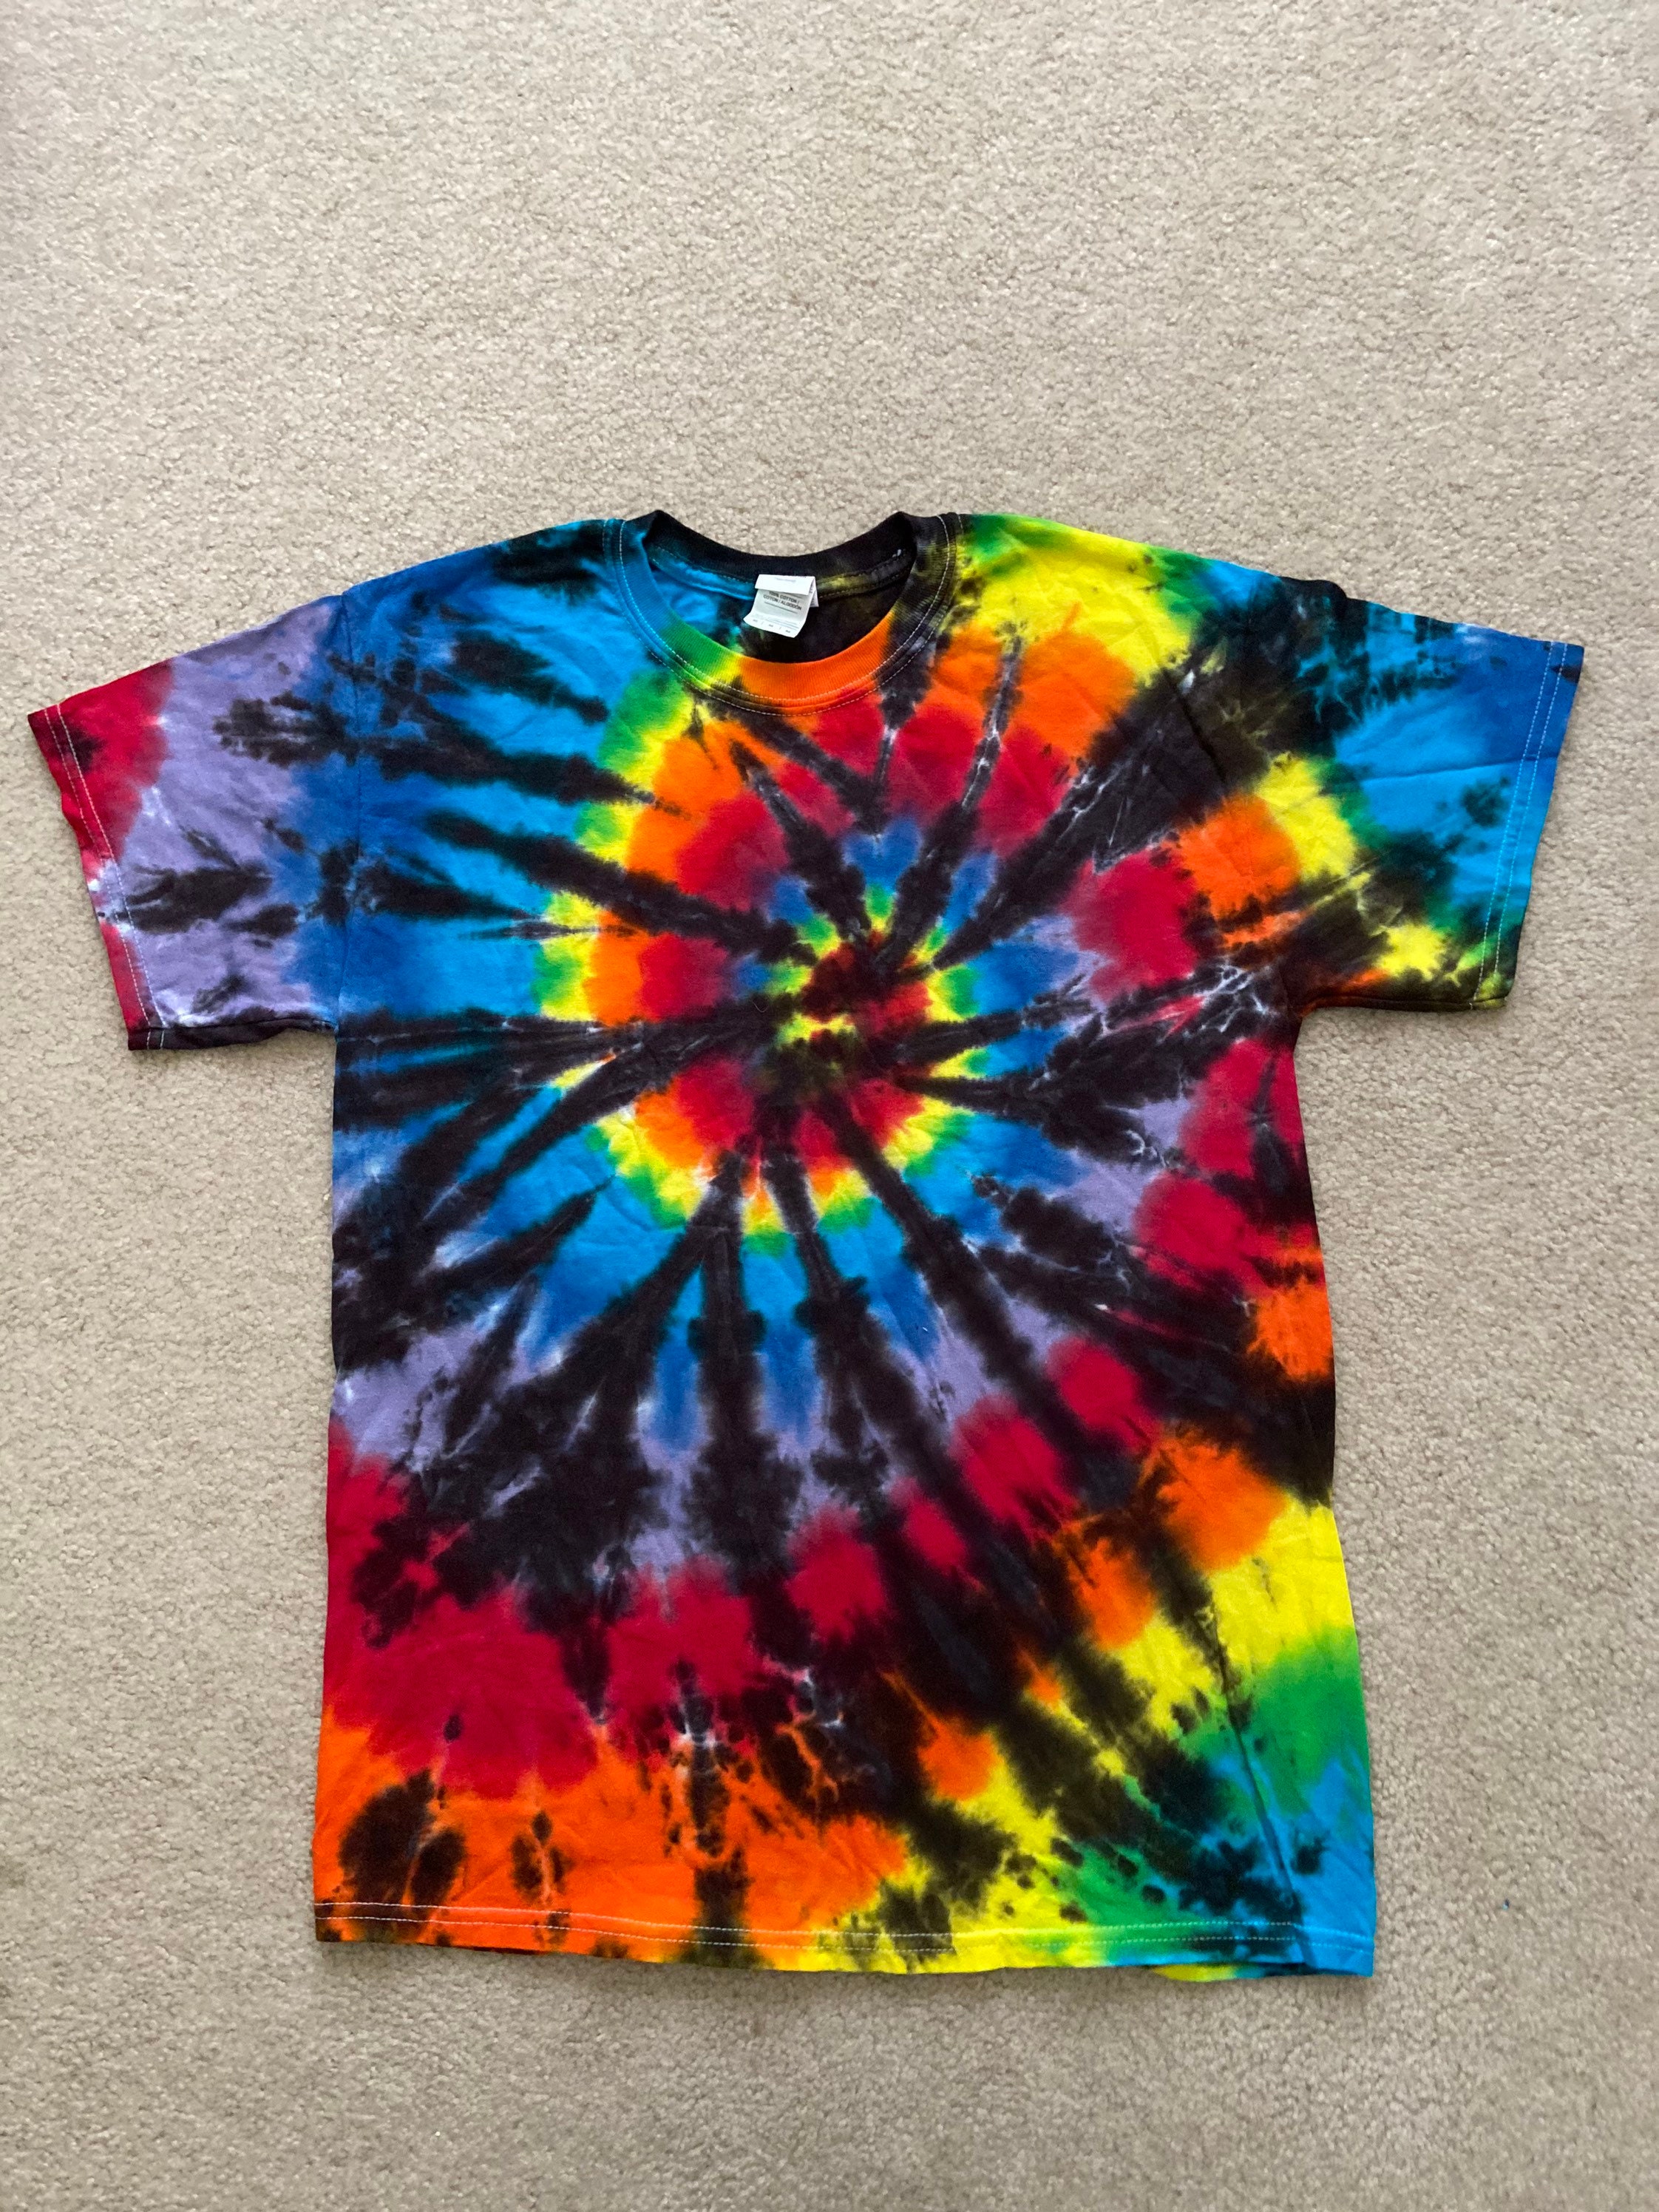 Tie Dye T-shirt/ Crinkle Rainbow / Unisex Tie Dye/ Festival - Etsy